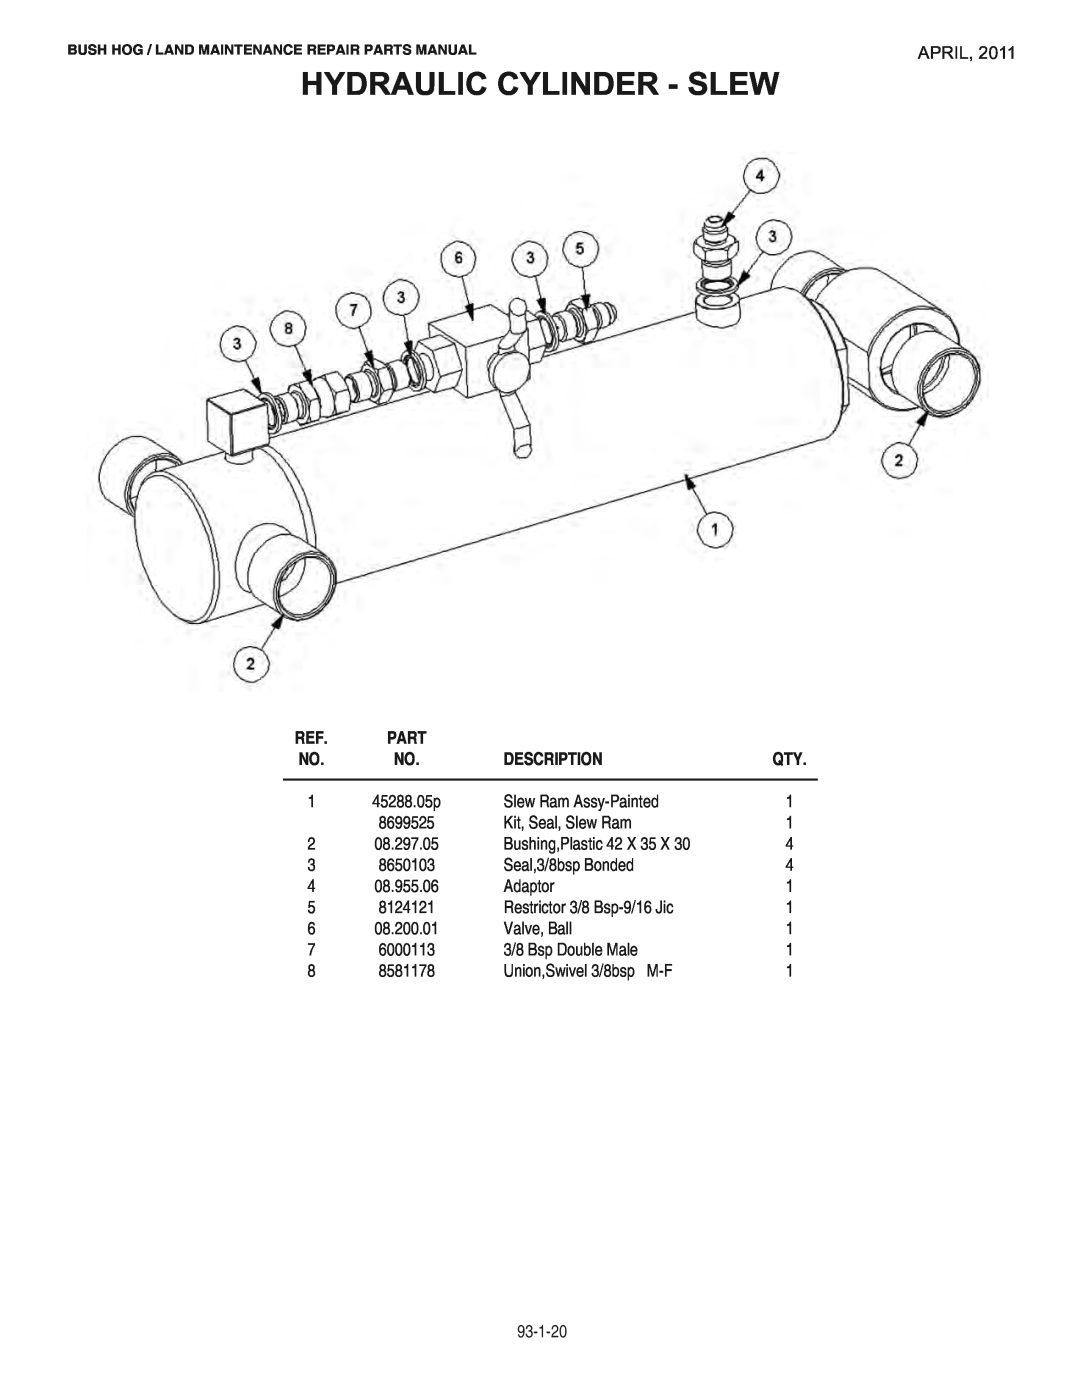 Bush Hog RMB1865E manual Hydraulic Cylinder - Slew, April, Description 